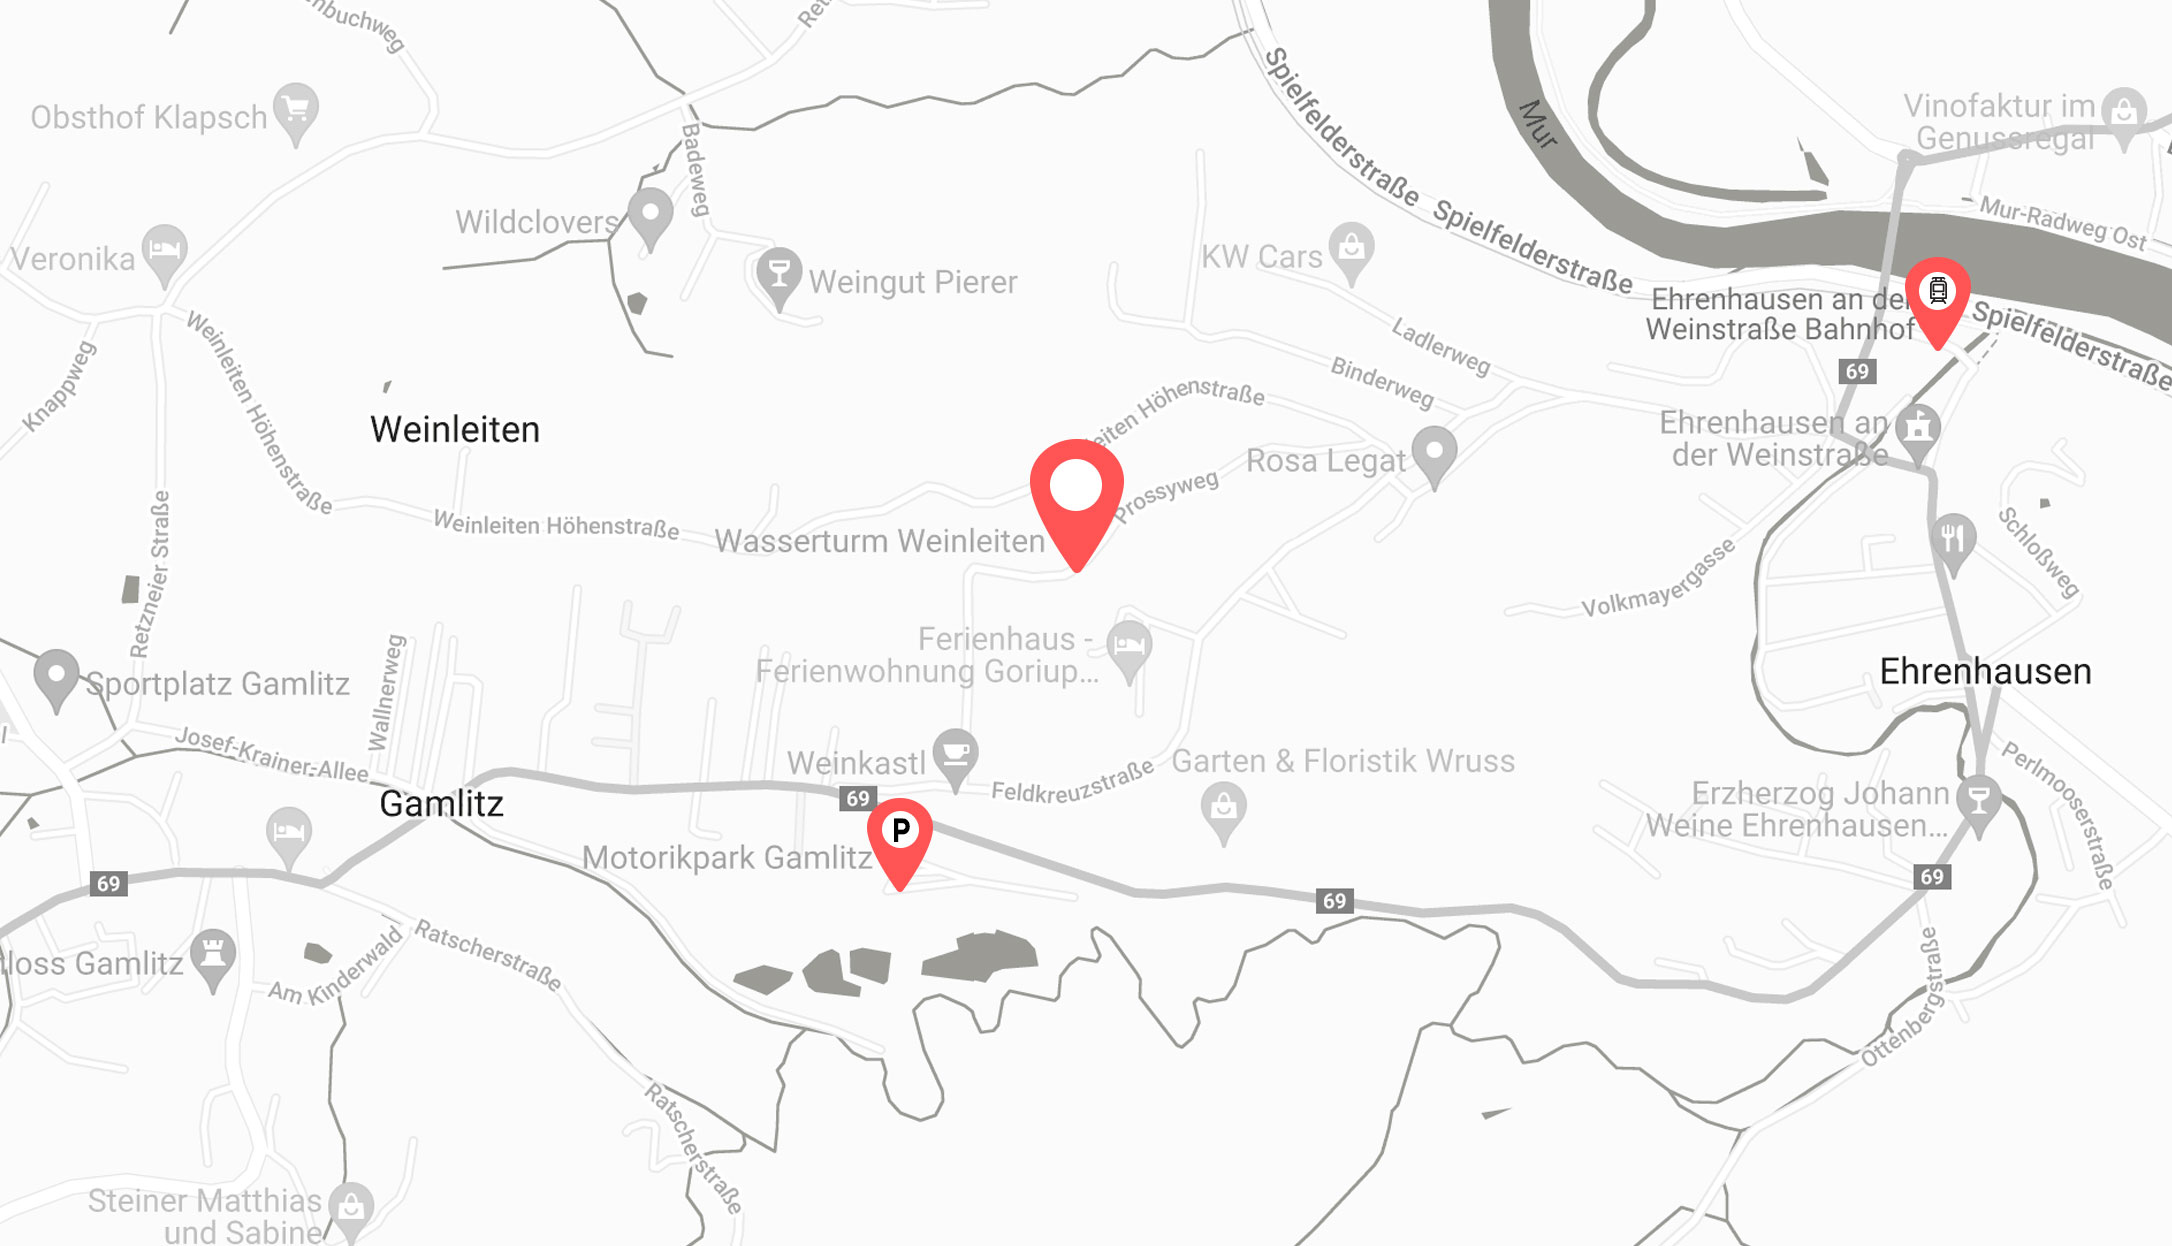 Map-Karte Gamlitz Ehrenhausen Wasserturm Weinleiten Parkplaetze Bahnhof